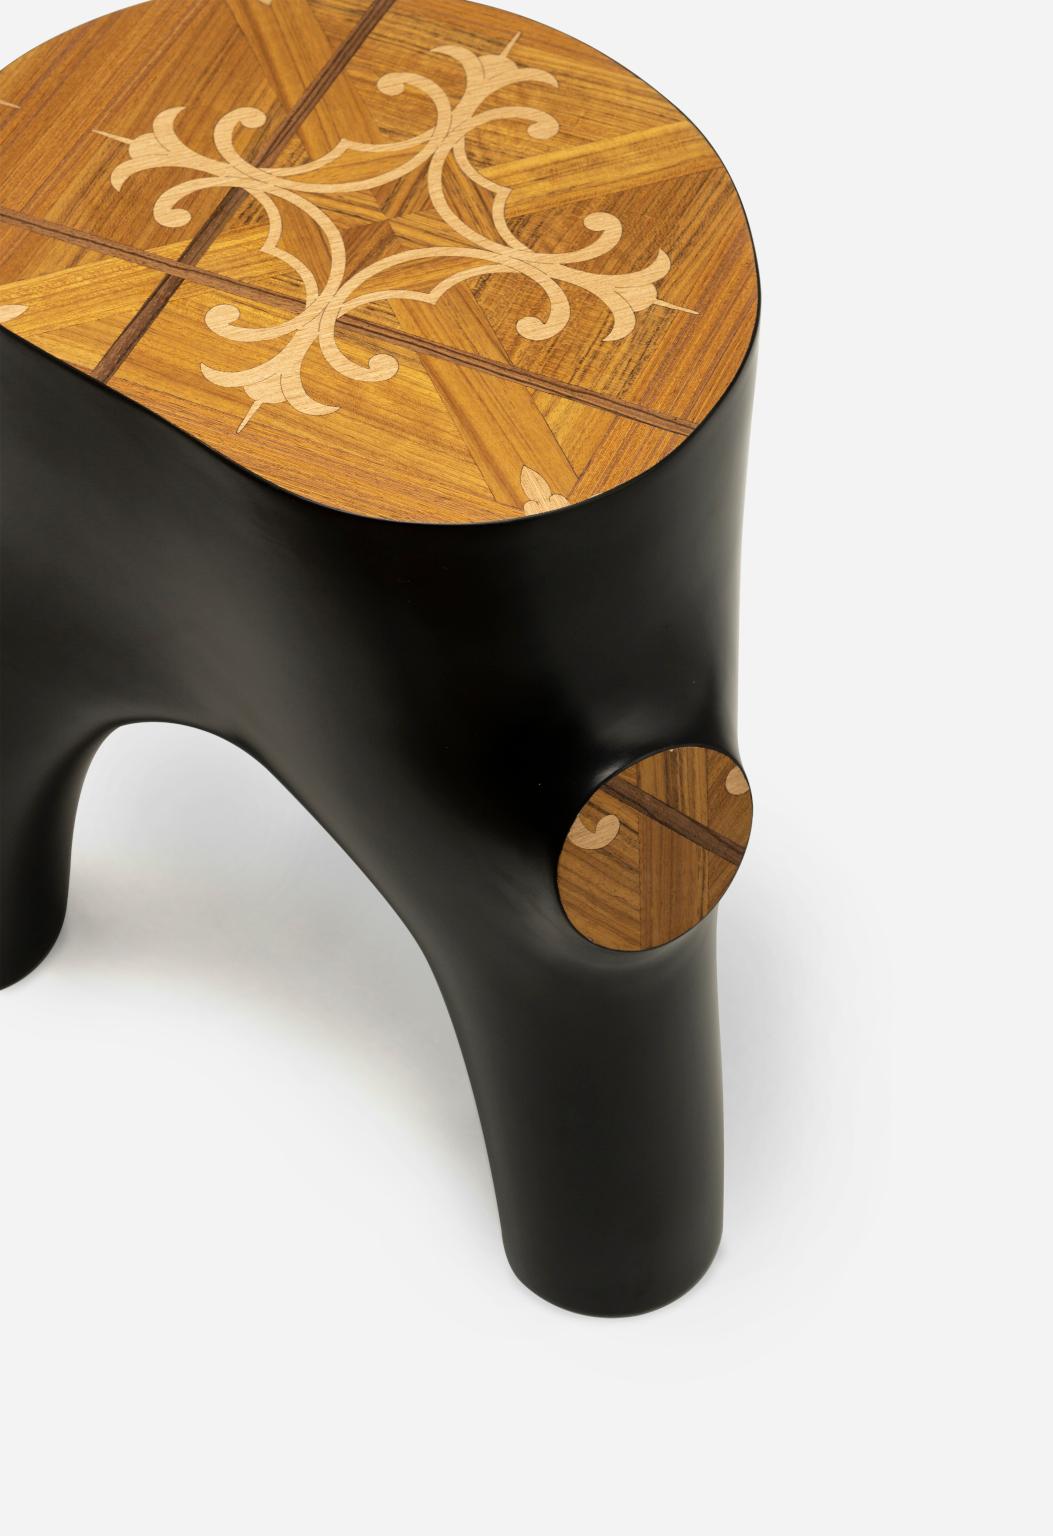 Stump
Stump è uno tavolino o sgabello che imita le forme organiche dei ceppi di legno e delle
loro radici. Il piano, intarsiato con motivo Fiorentino, è realizzato con diverse tipologie
di legno.
Stump is a side table or stool which mimics the